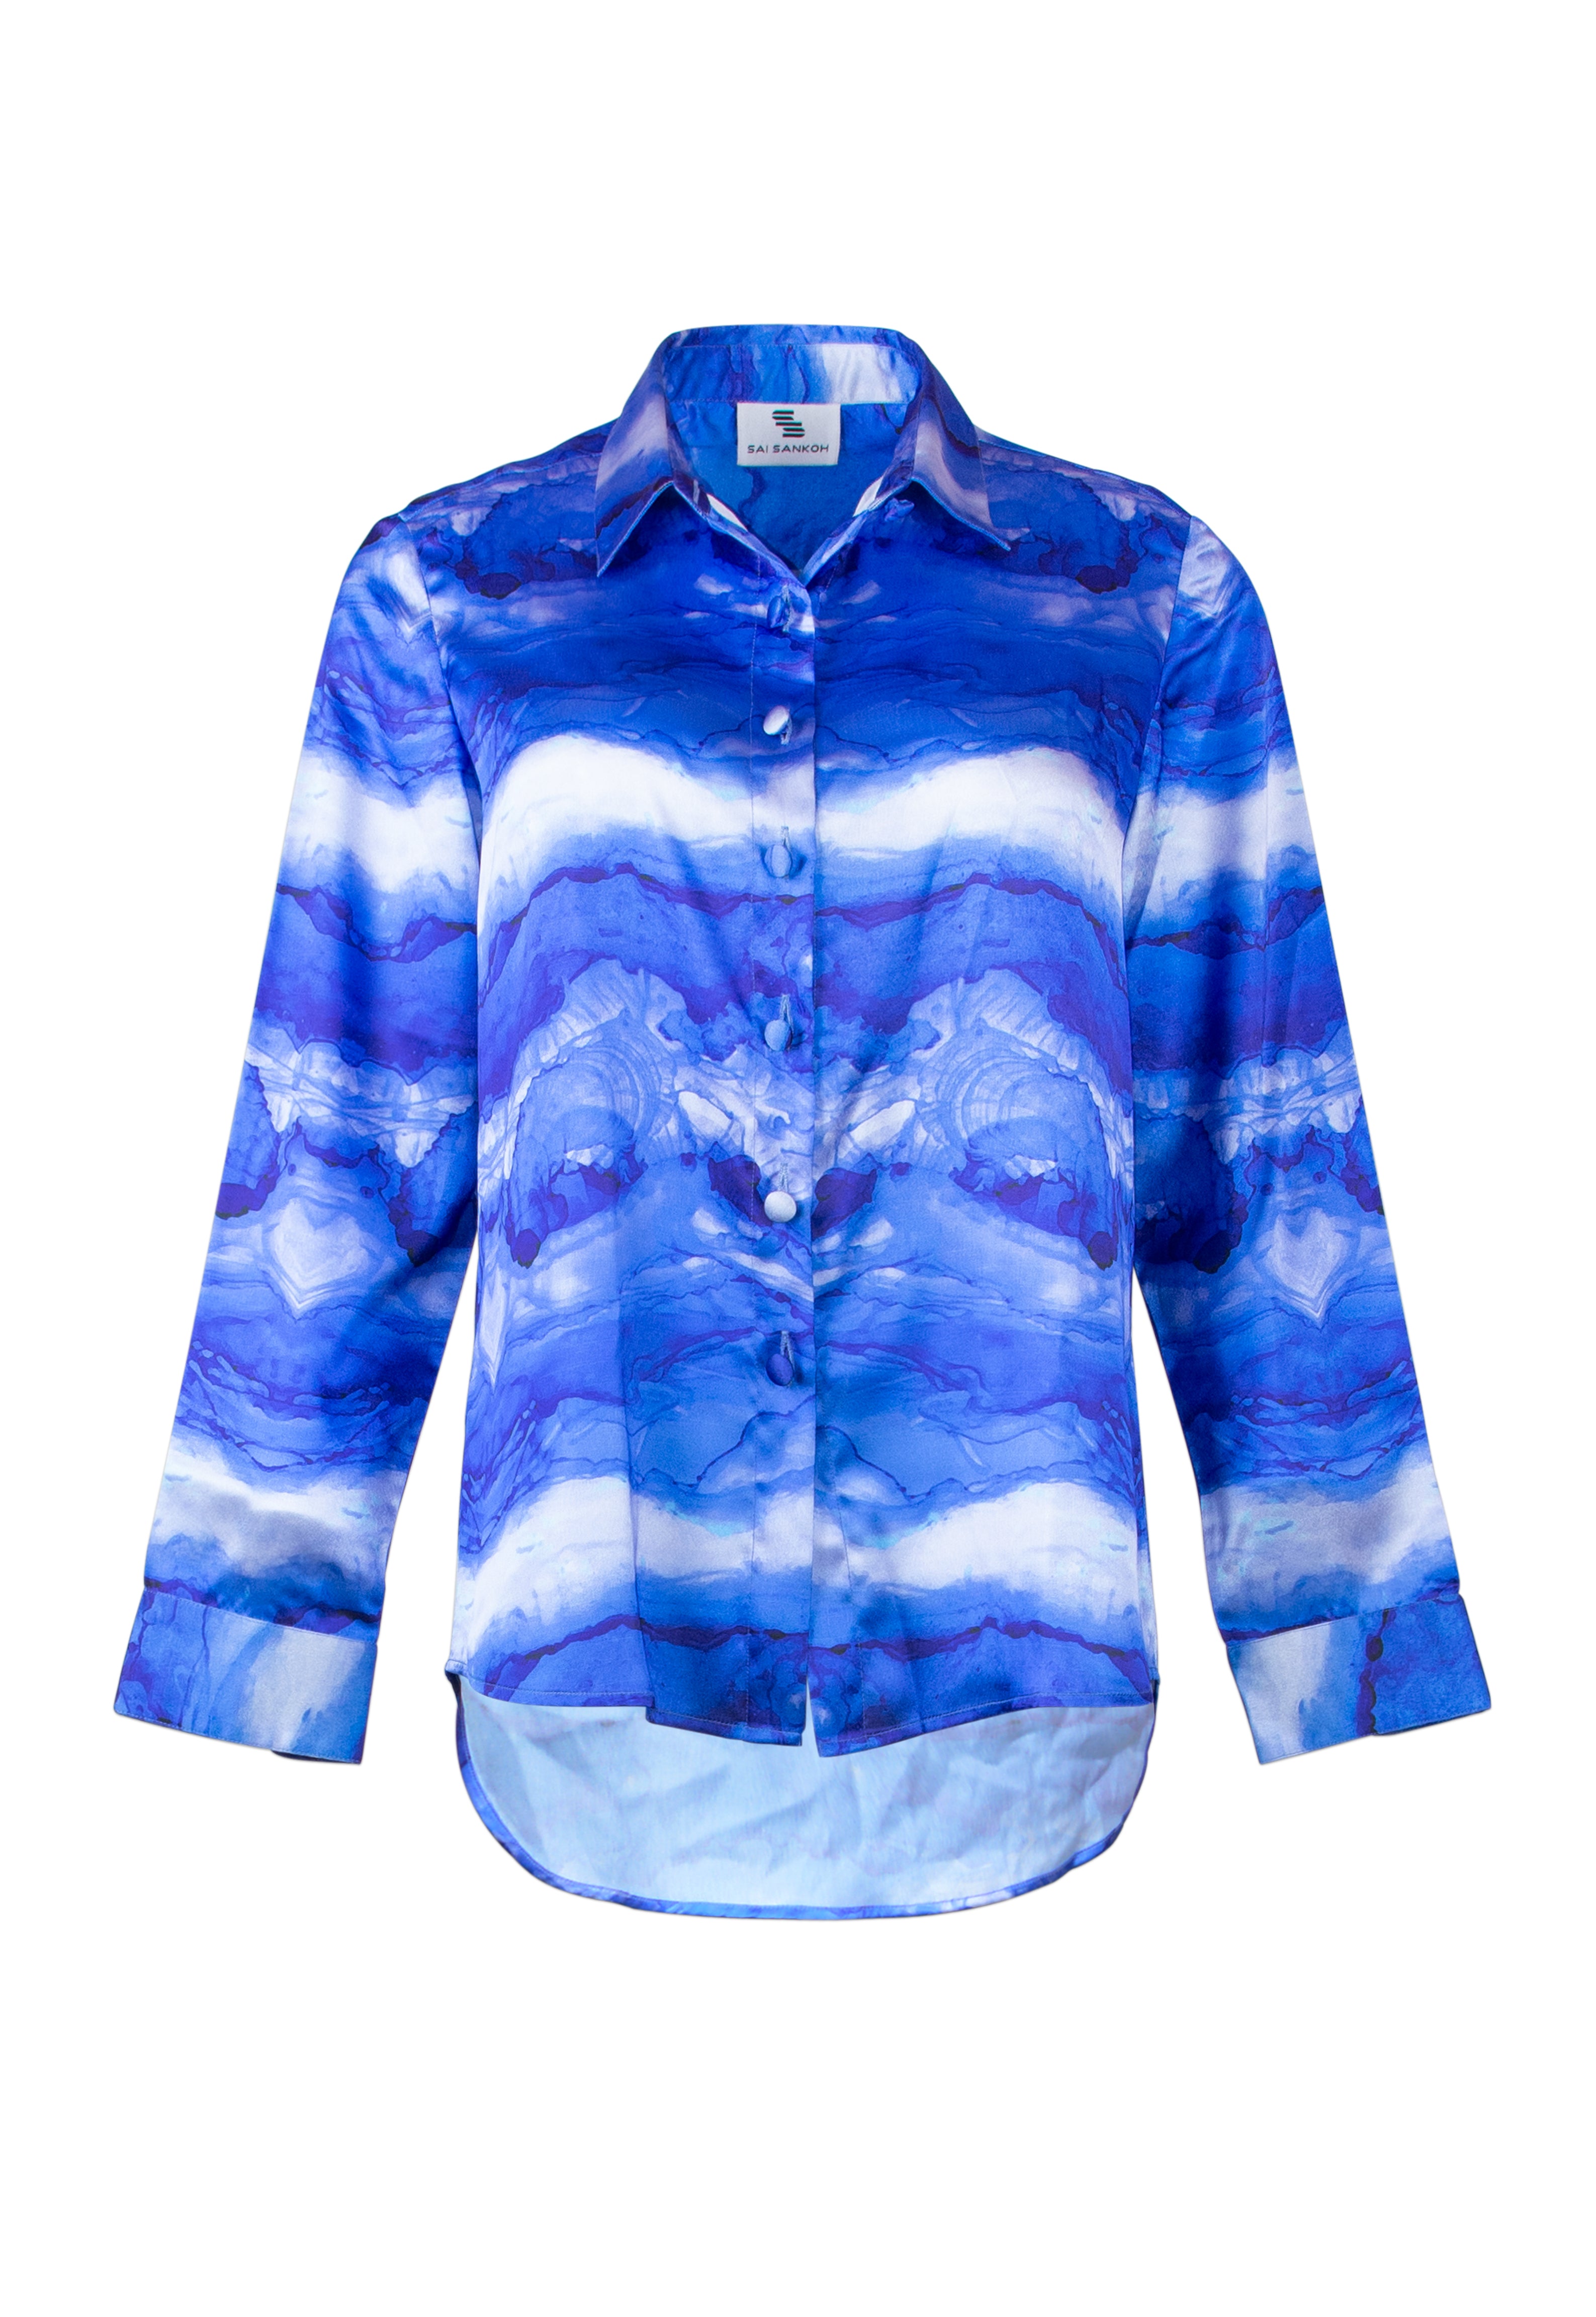 Blue Ocean Shirt | saisankoh